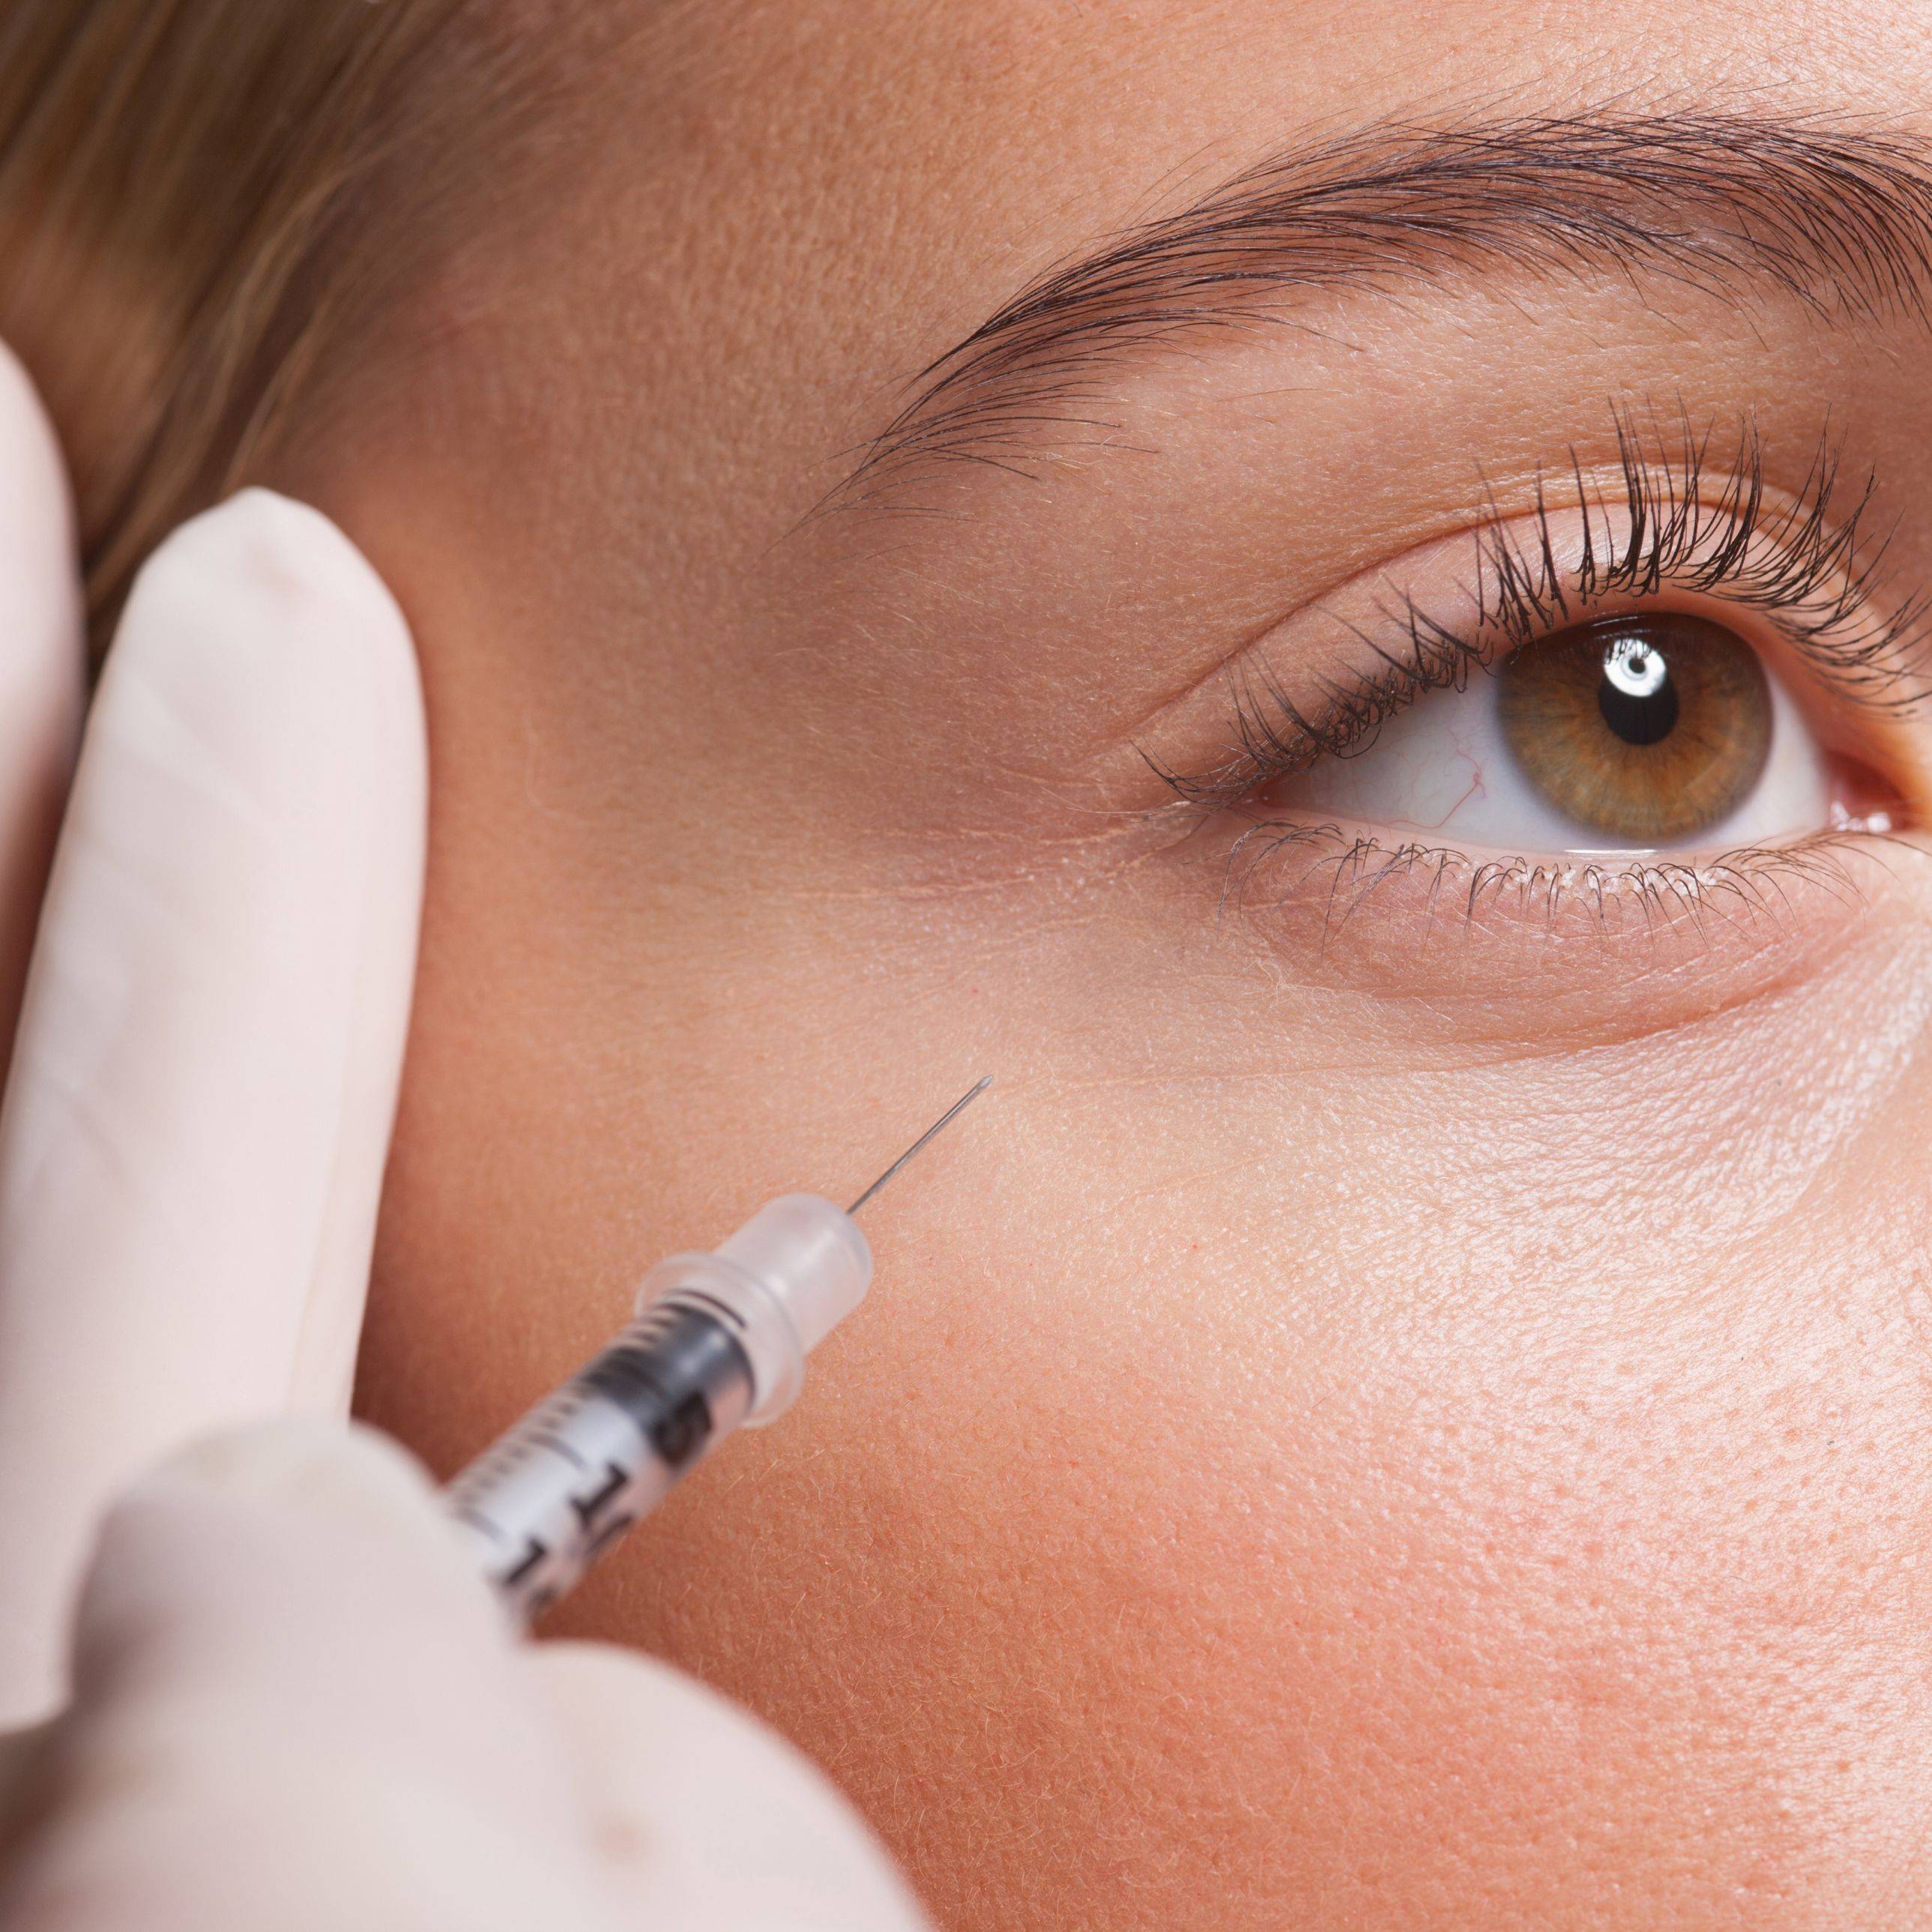 Как убрать синяки под глазами: косметология и процедуры в салонах красоты такие как филлеры, мезотерапия, блефаропластика, липолифтинг